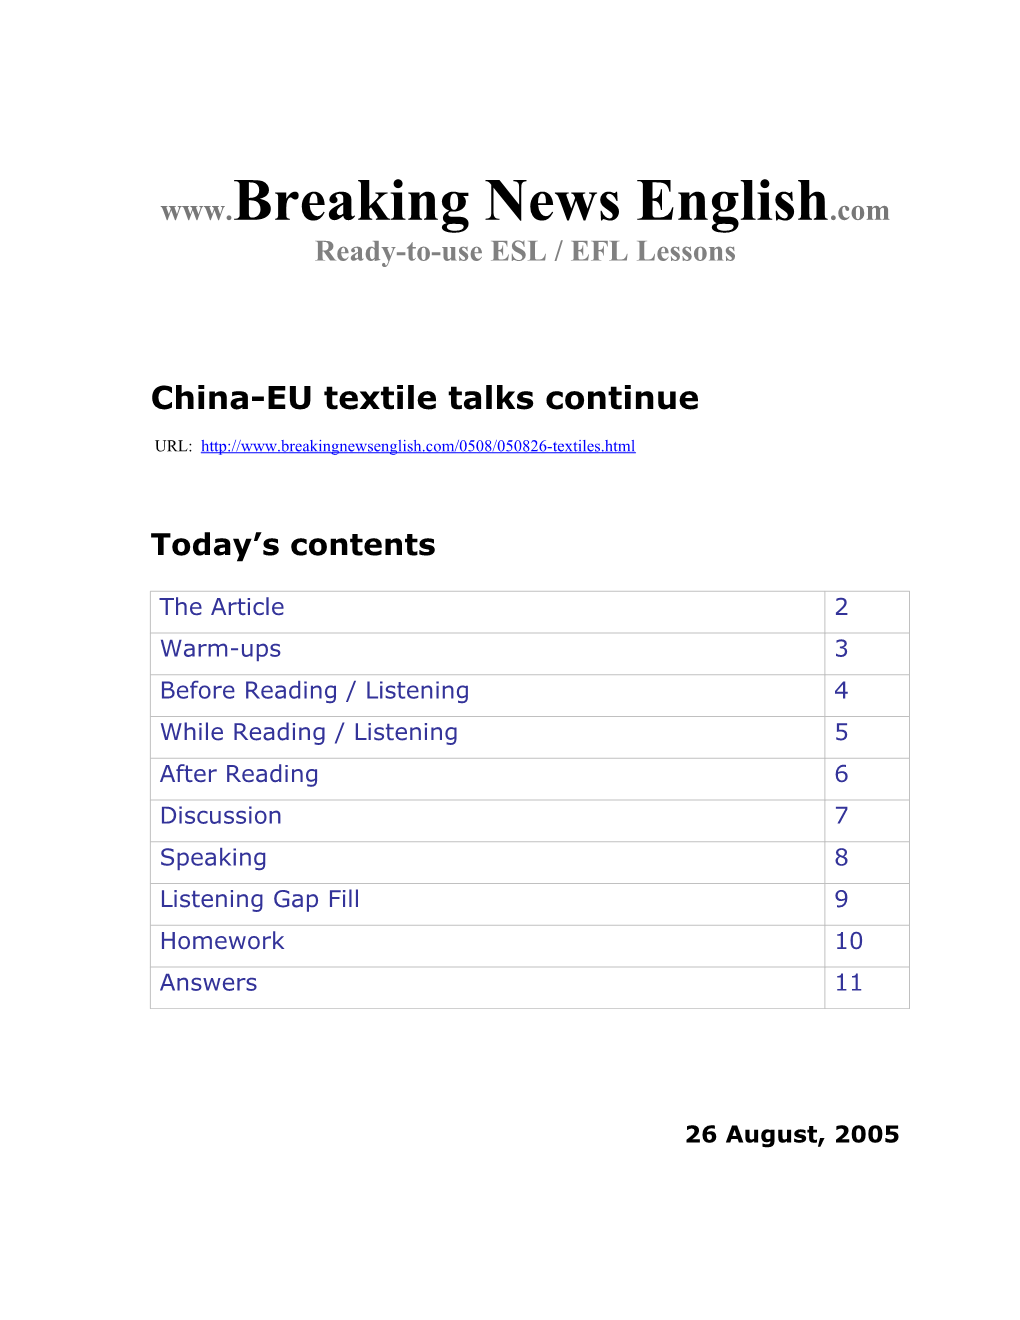 China-EU Textile Talks Continue